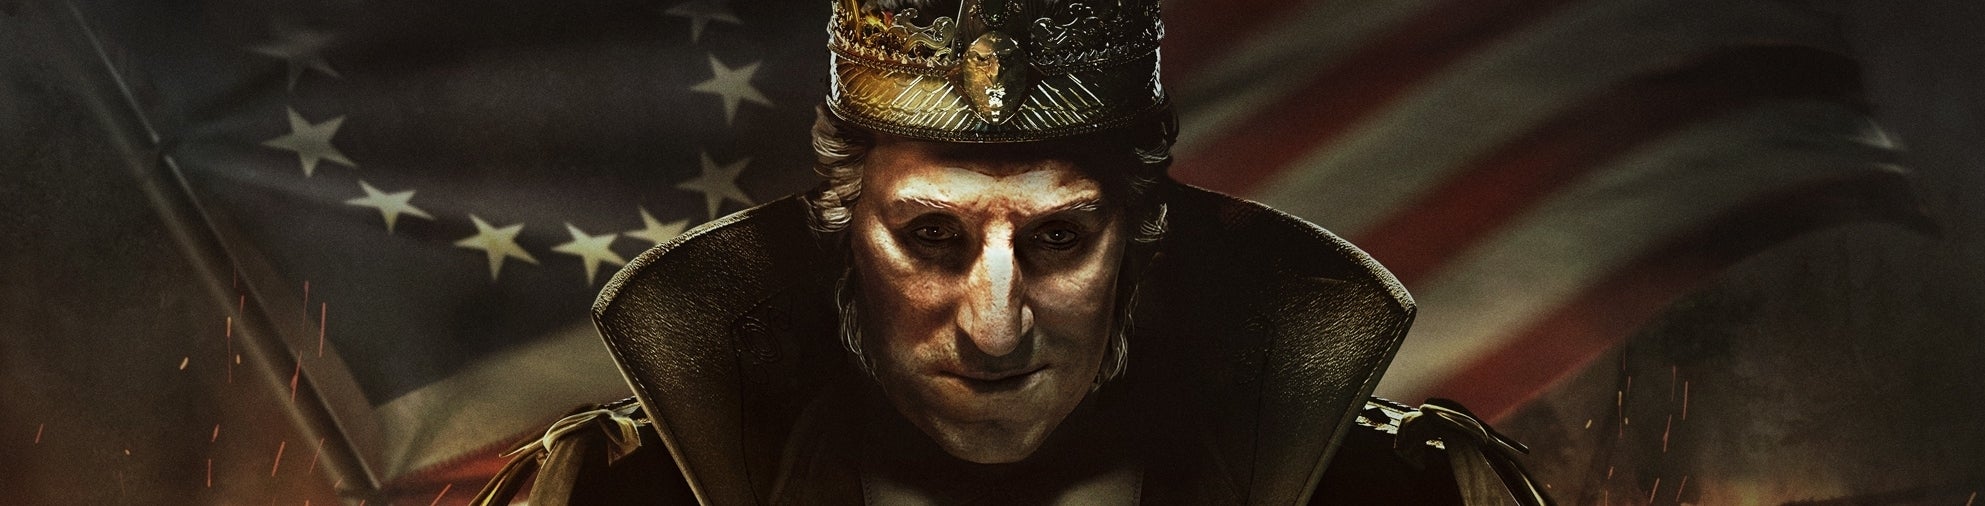 Bilder zu Assassin's Creed 3: Die Tyrannei von König George Washington - Der Verrat - Test